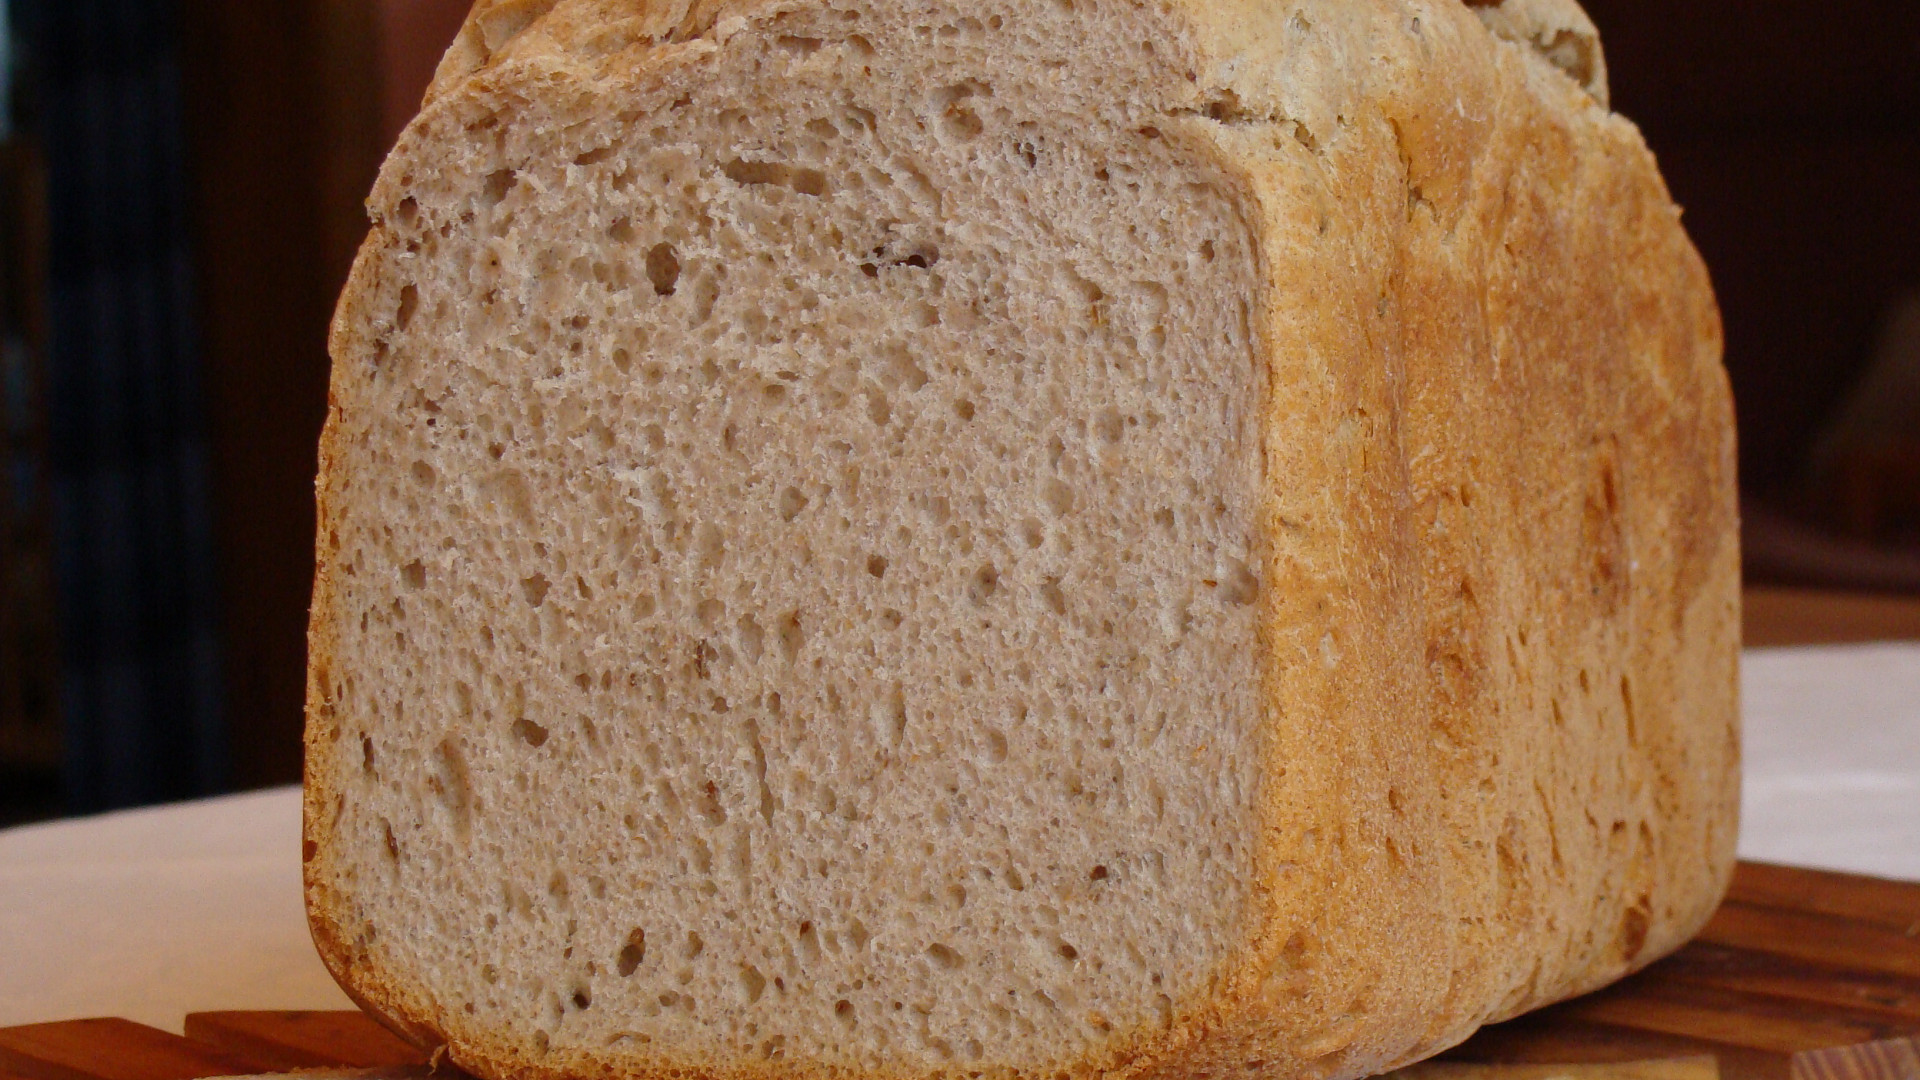 Šumava - chléb